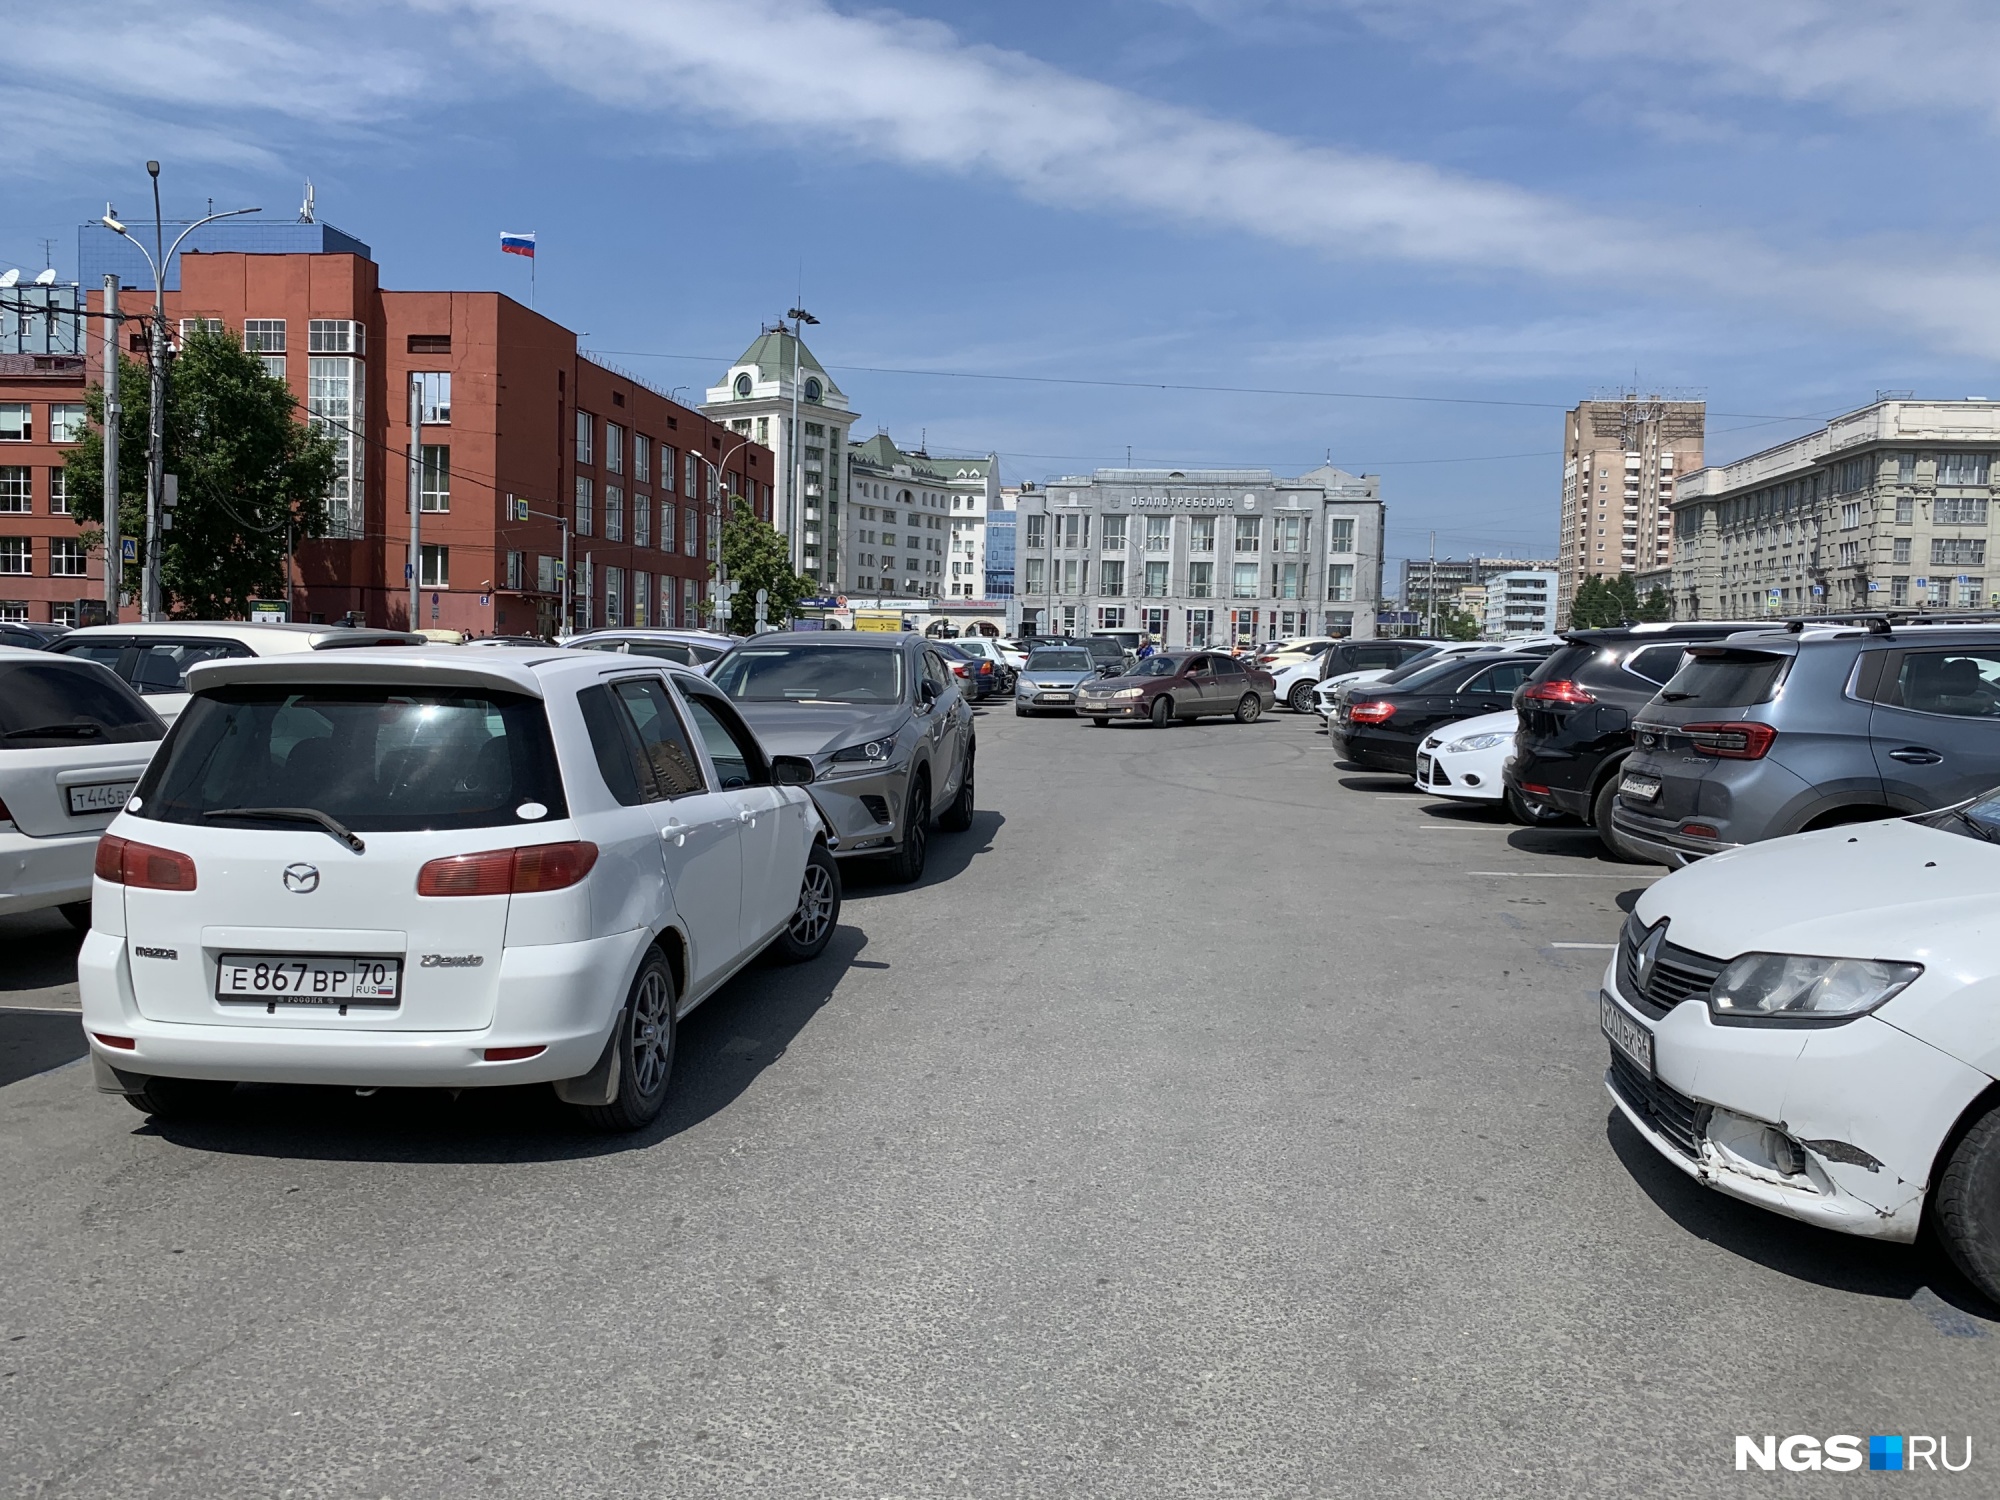 Плати или уматывай. Сколько новосибирцы отдают за платные парковки на Красном и как там стоять бесплатно